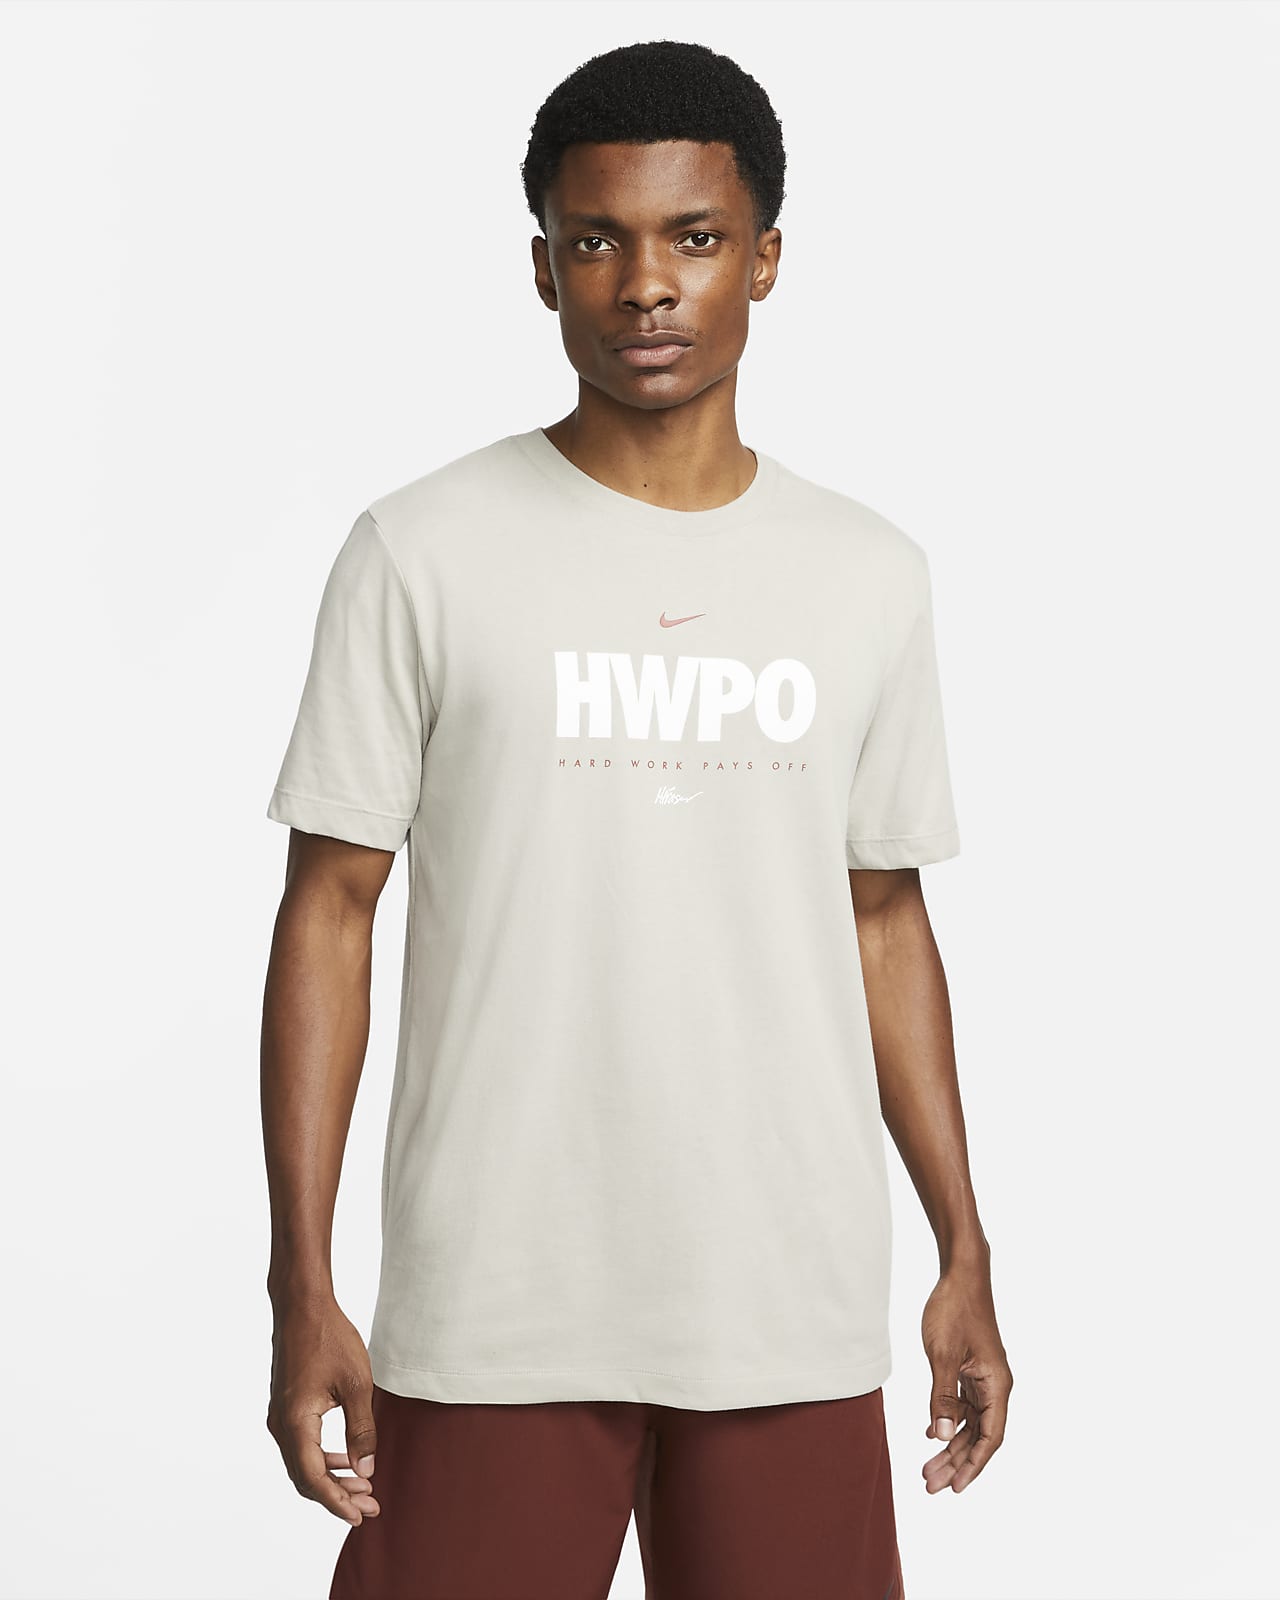 Nike Dri-FIT 'HWPO' Men's Training T-Shirt